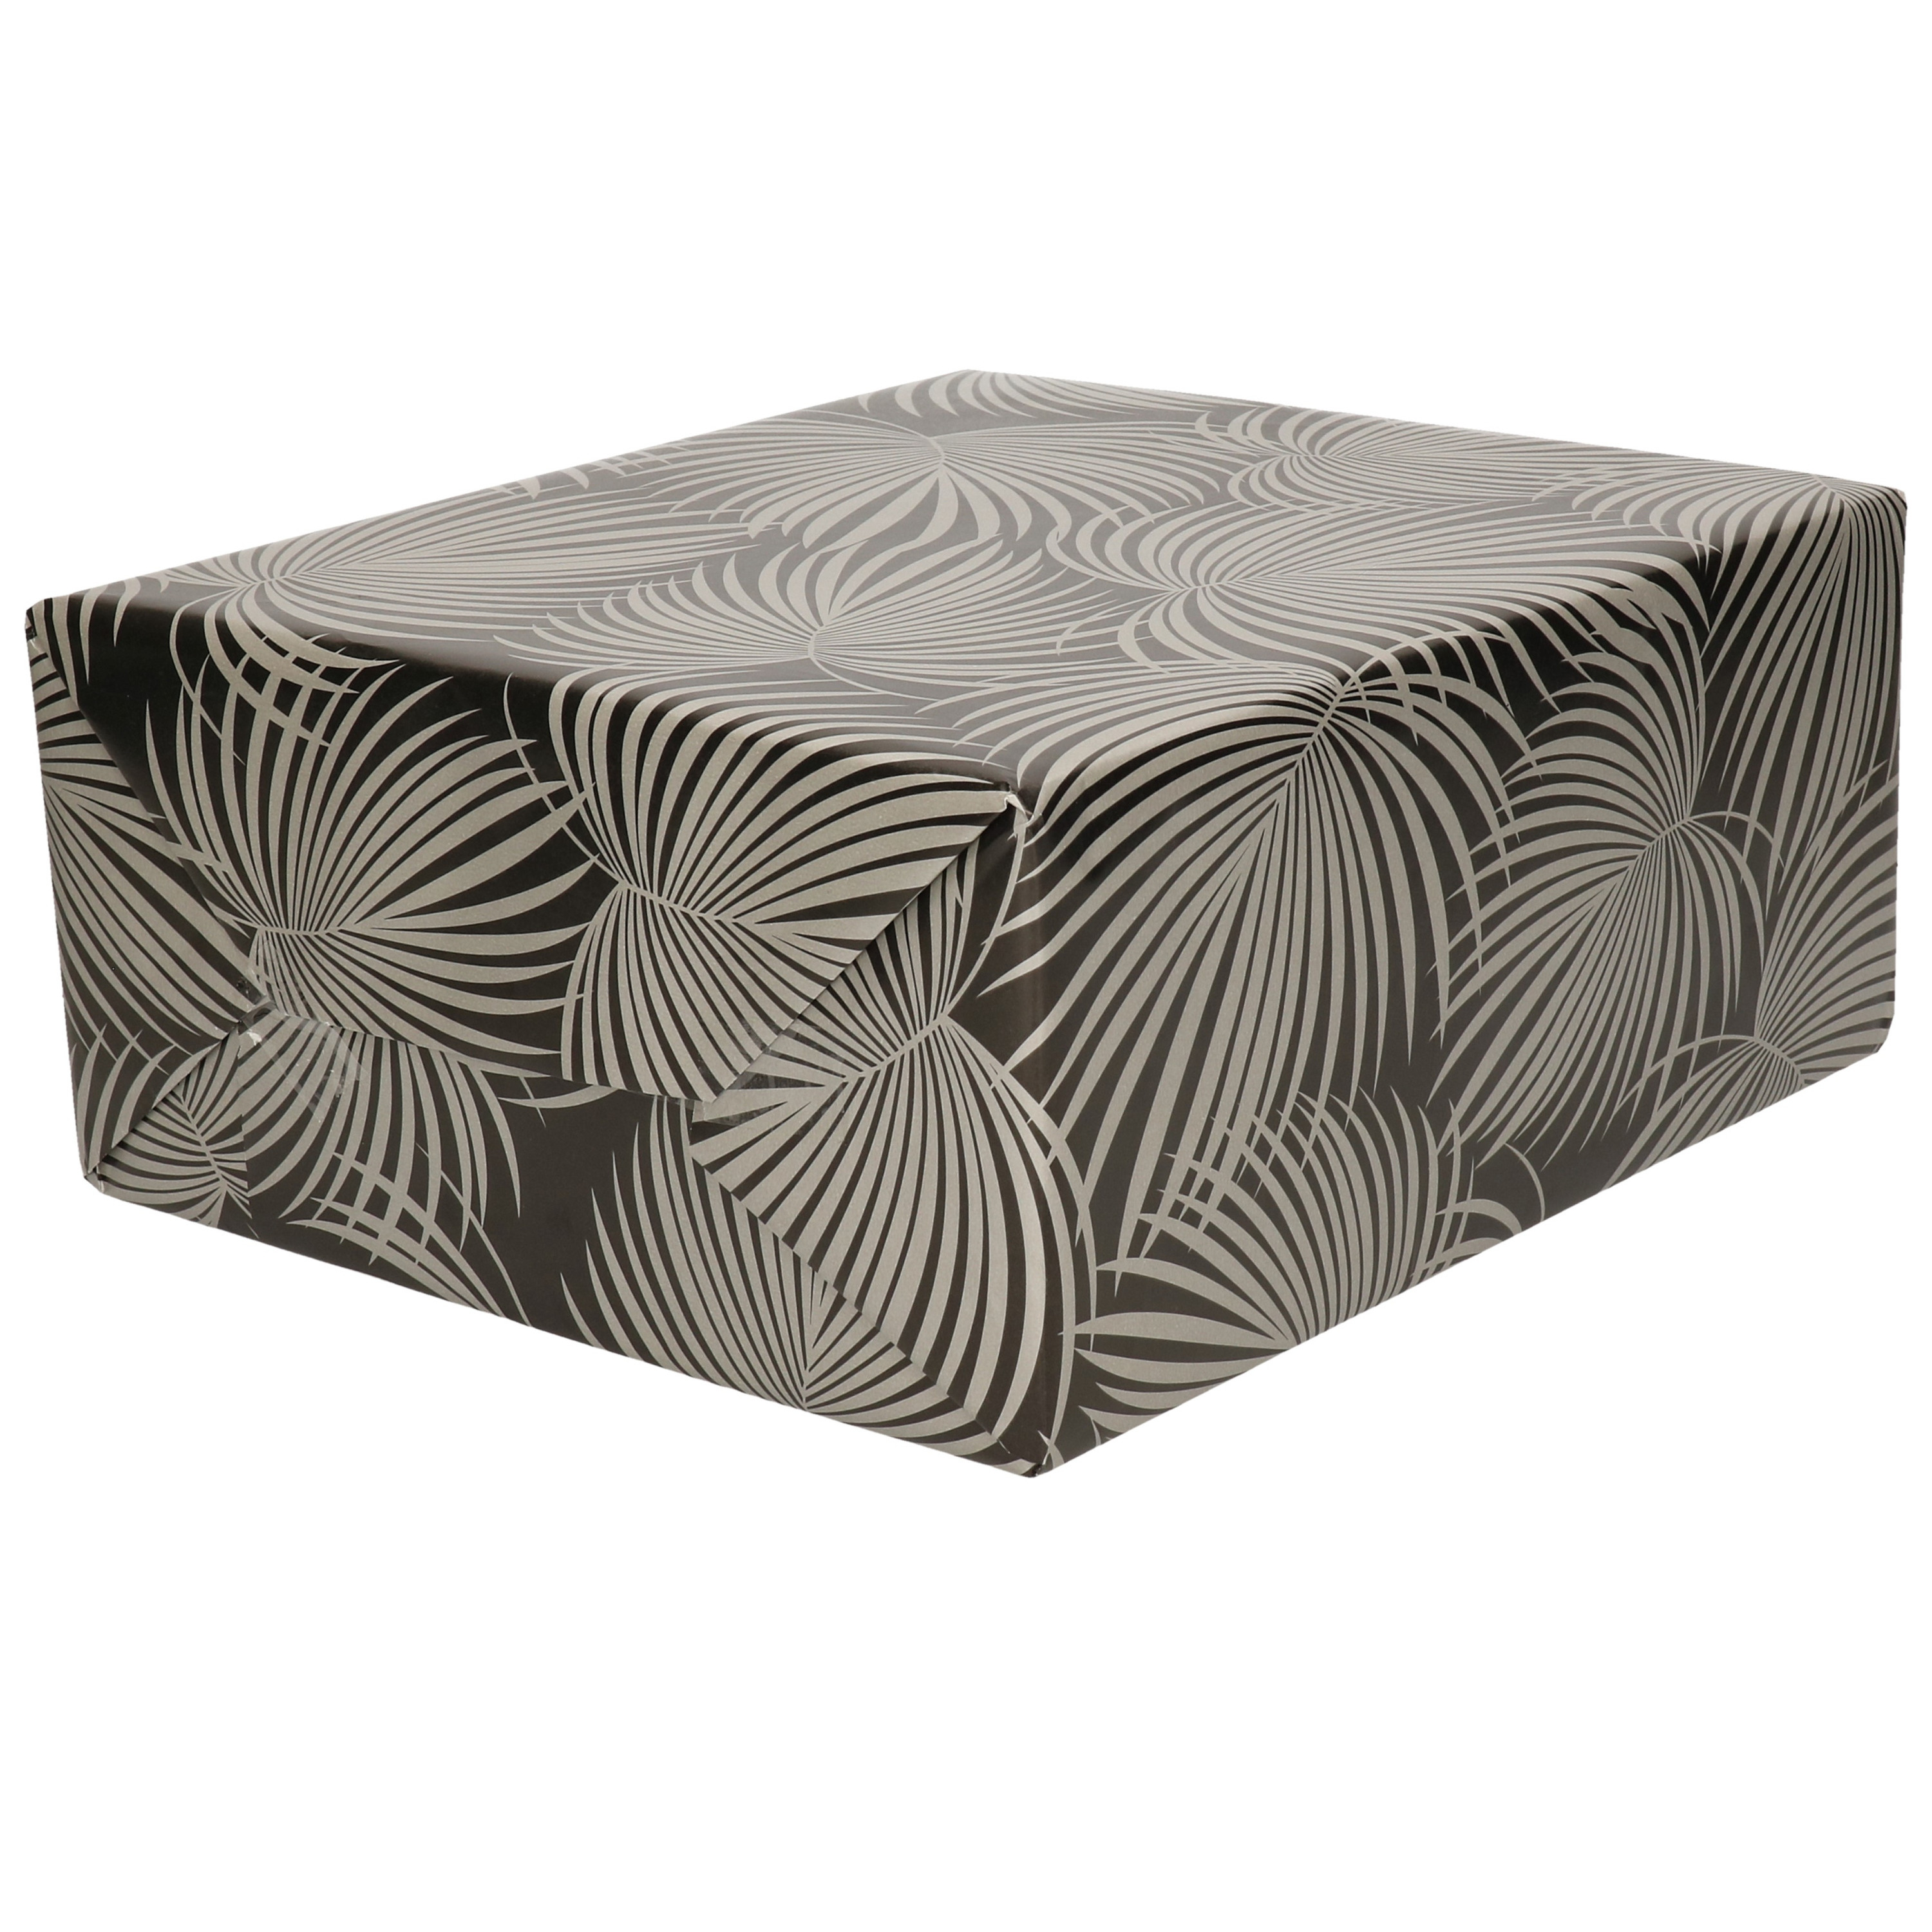 1x Rollen folie inpakpapier-cadeaupapier metallic zwart-zilver met bladeren 70 x 200 cm